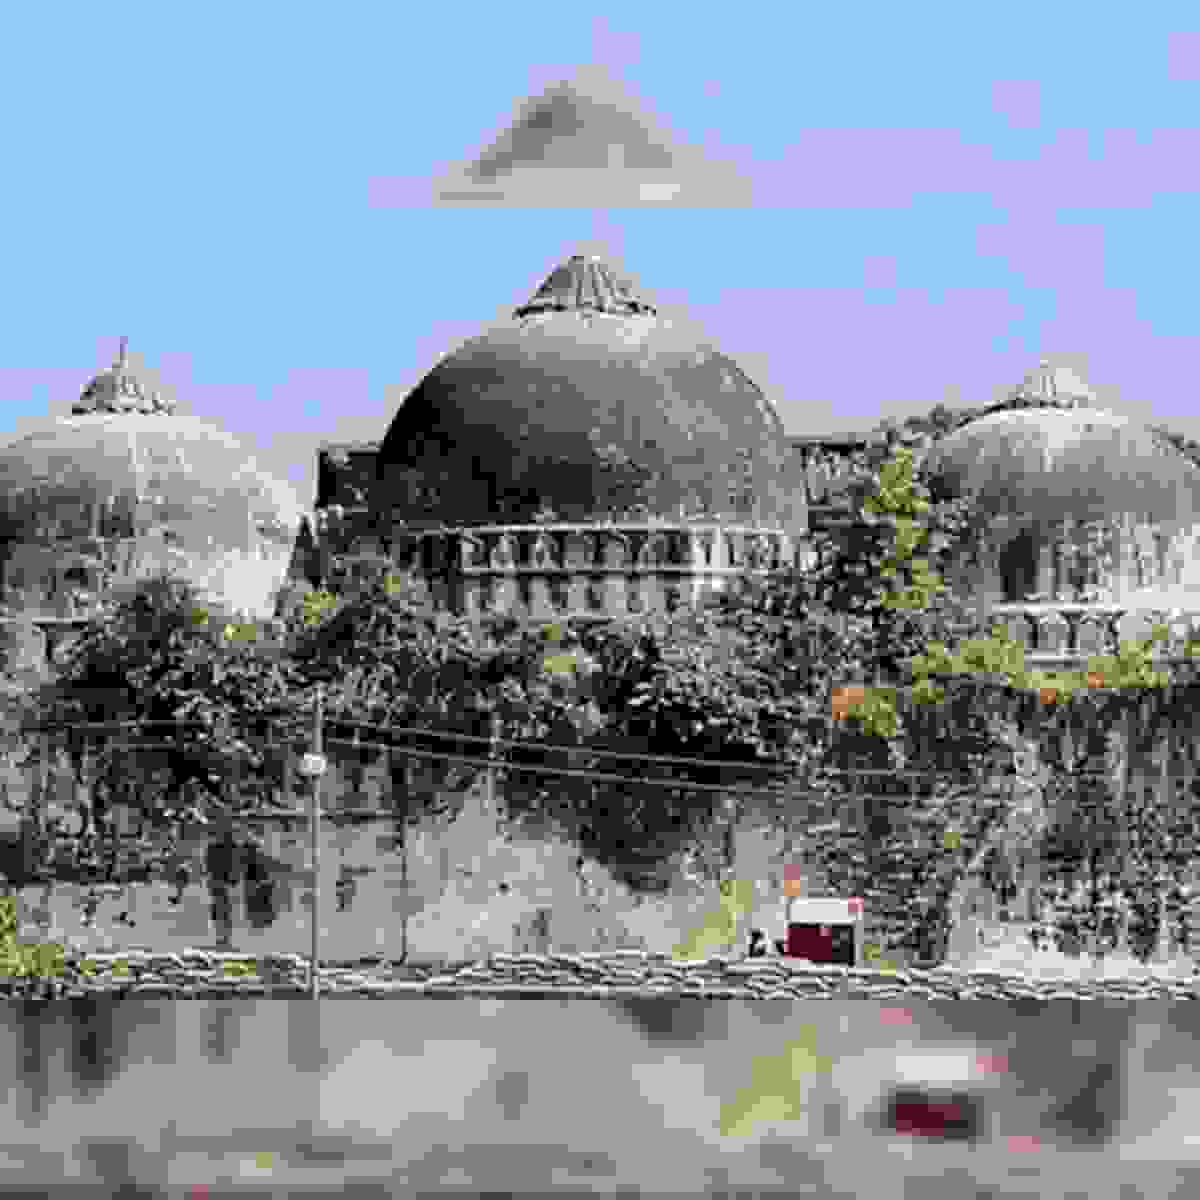 सुप्रीम के आदेश के तीन साल बाद भी अयोध्या की नई मस्जिद का निर्माण शुरू नहीं हुआ, पढ़िए रिपोर्ट